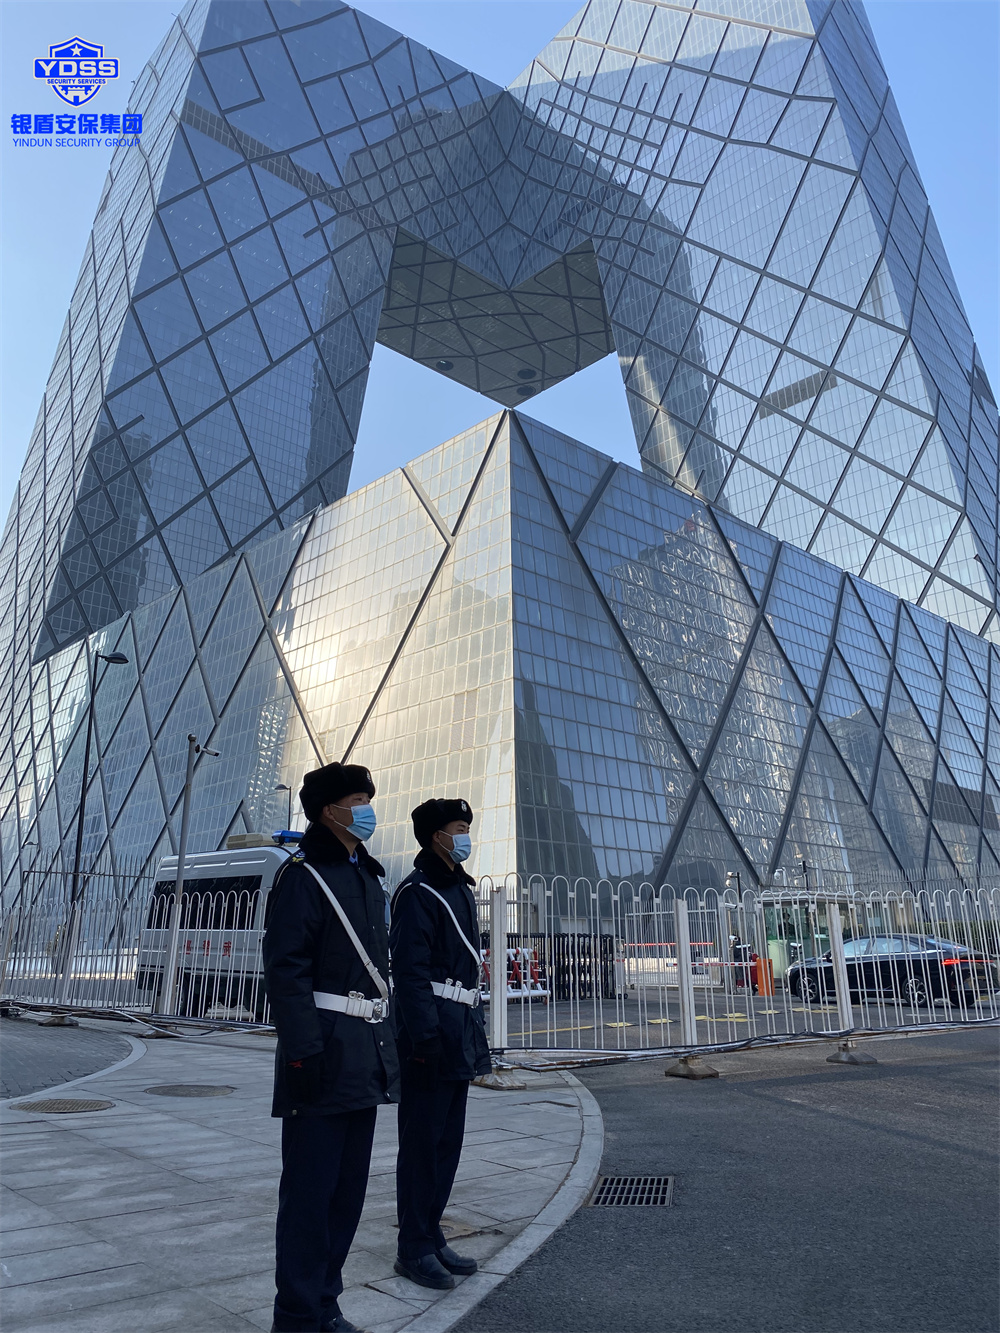 北京保安服务供应商澳门新莆京游戏网站为中央电视台提供安保服务